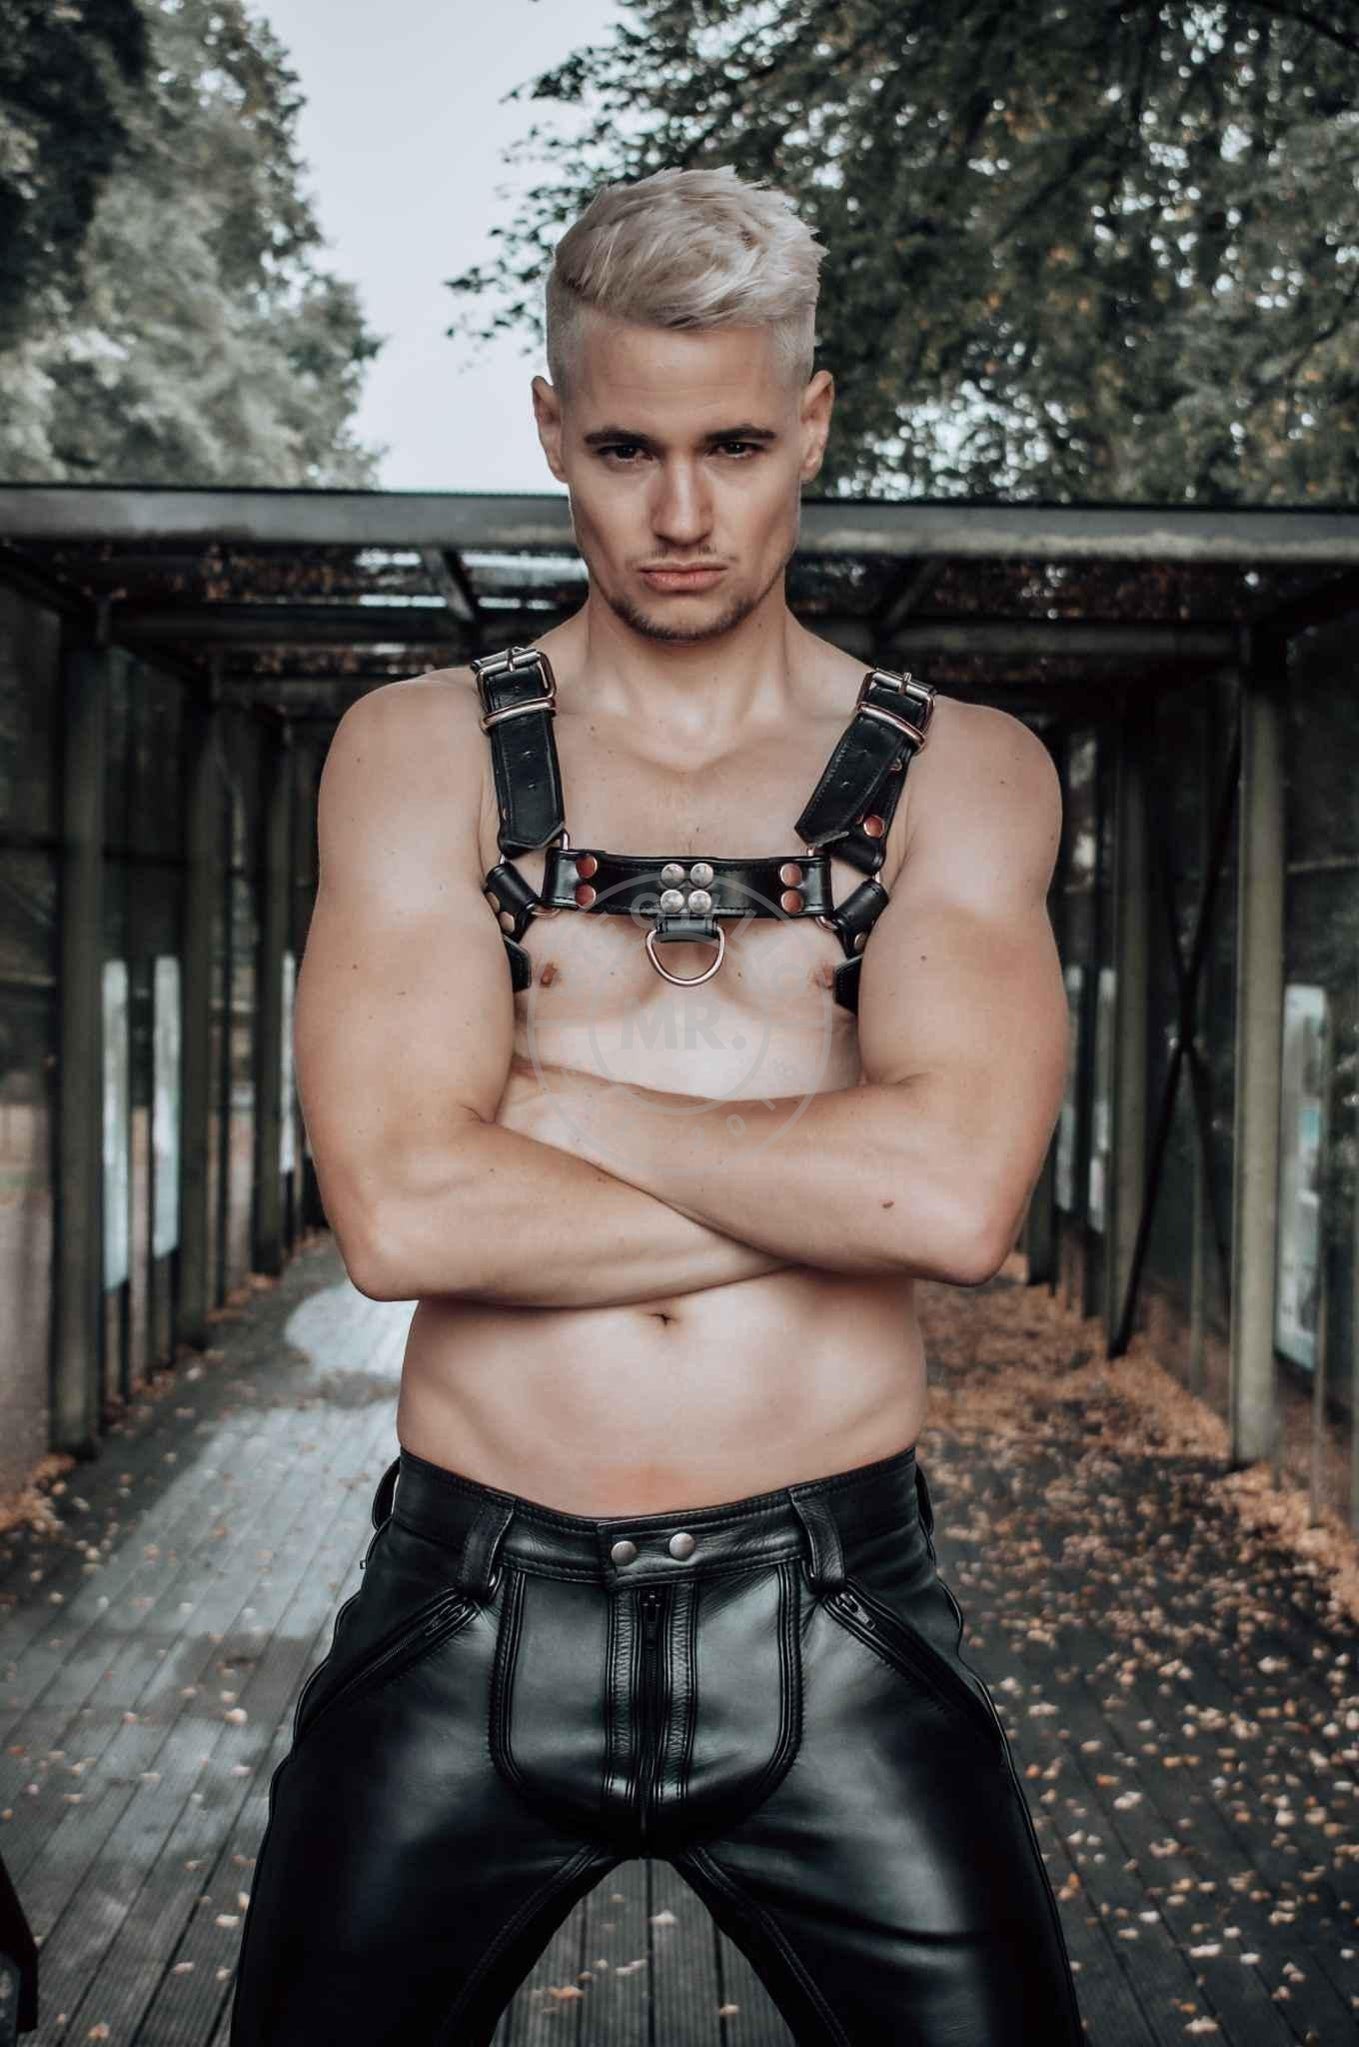 Leather Harness at MR. Riegillio